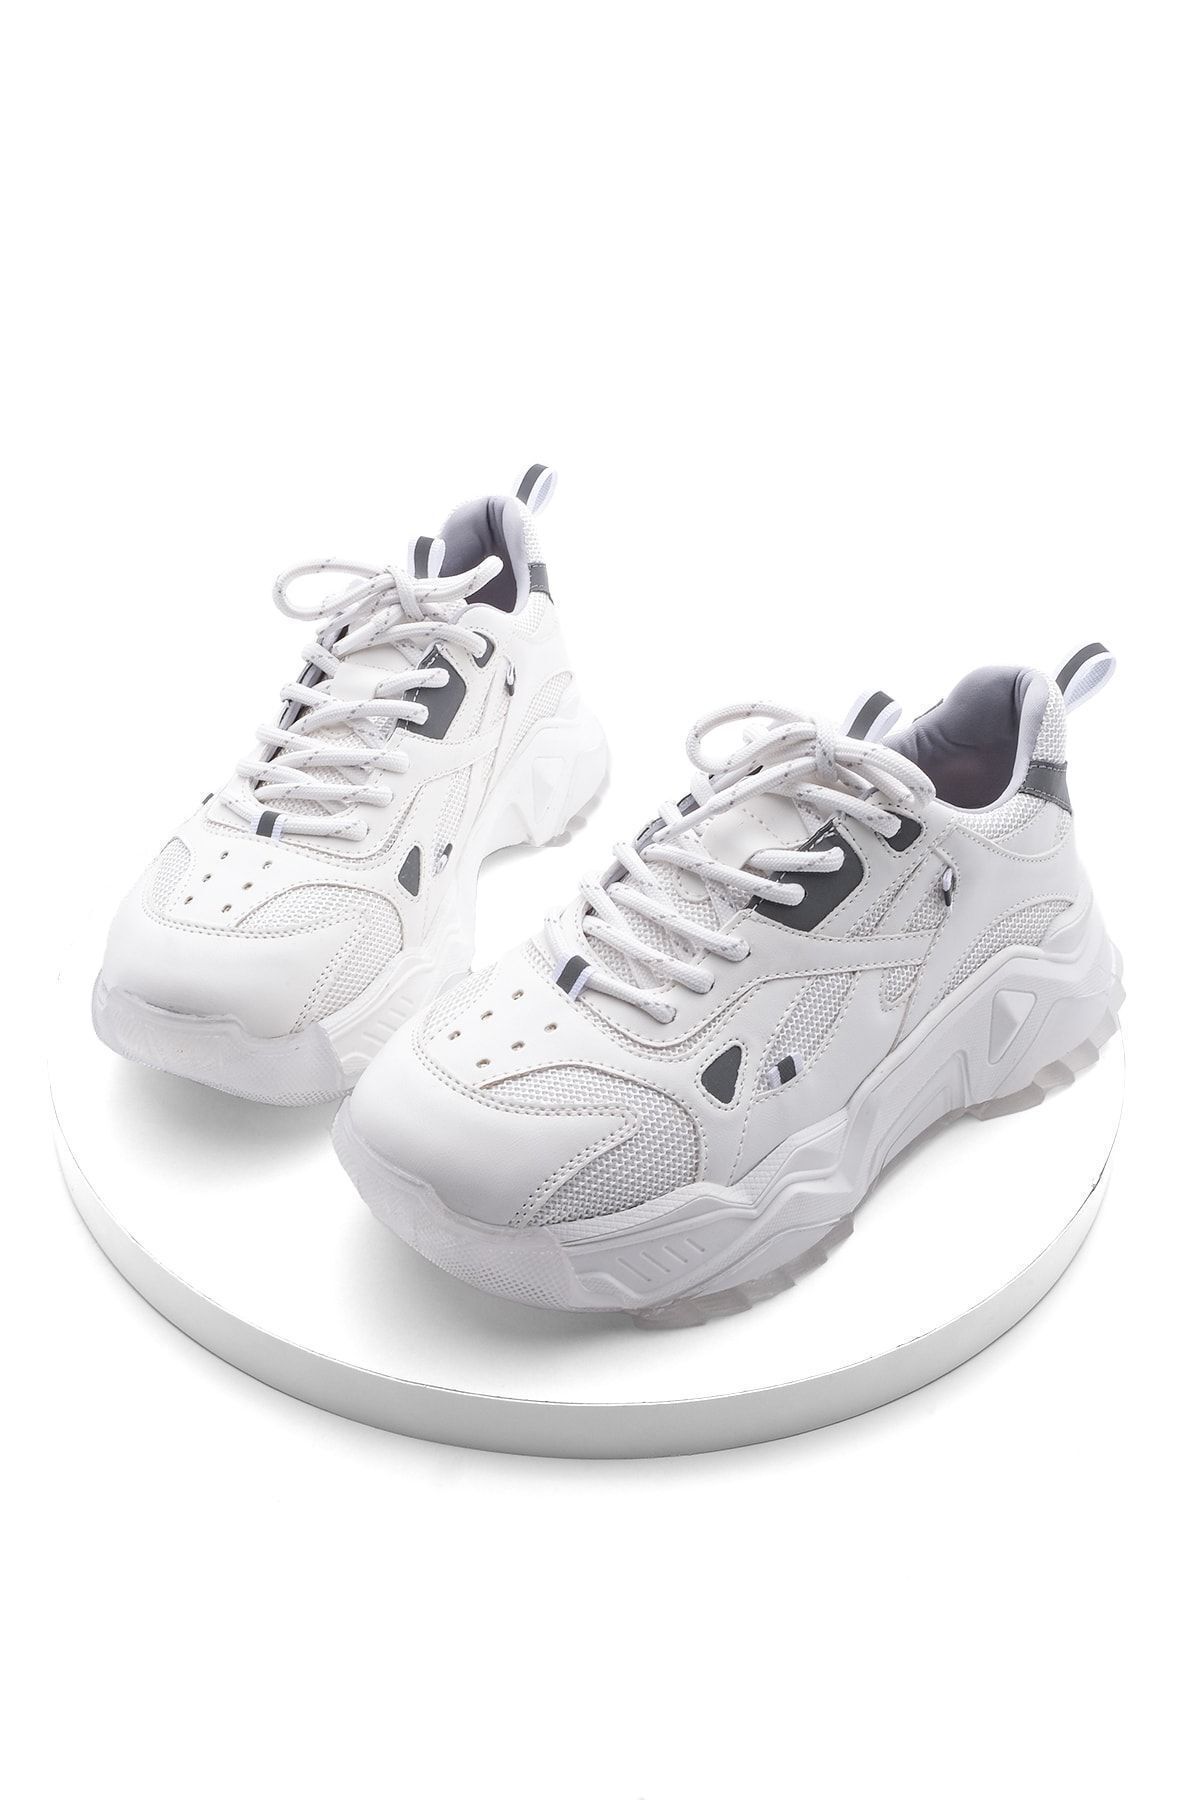 Marjin Kadın Yüksek Taban Sneaker Bağcıklı Spor Ayakkabı Virez Beyaz